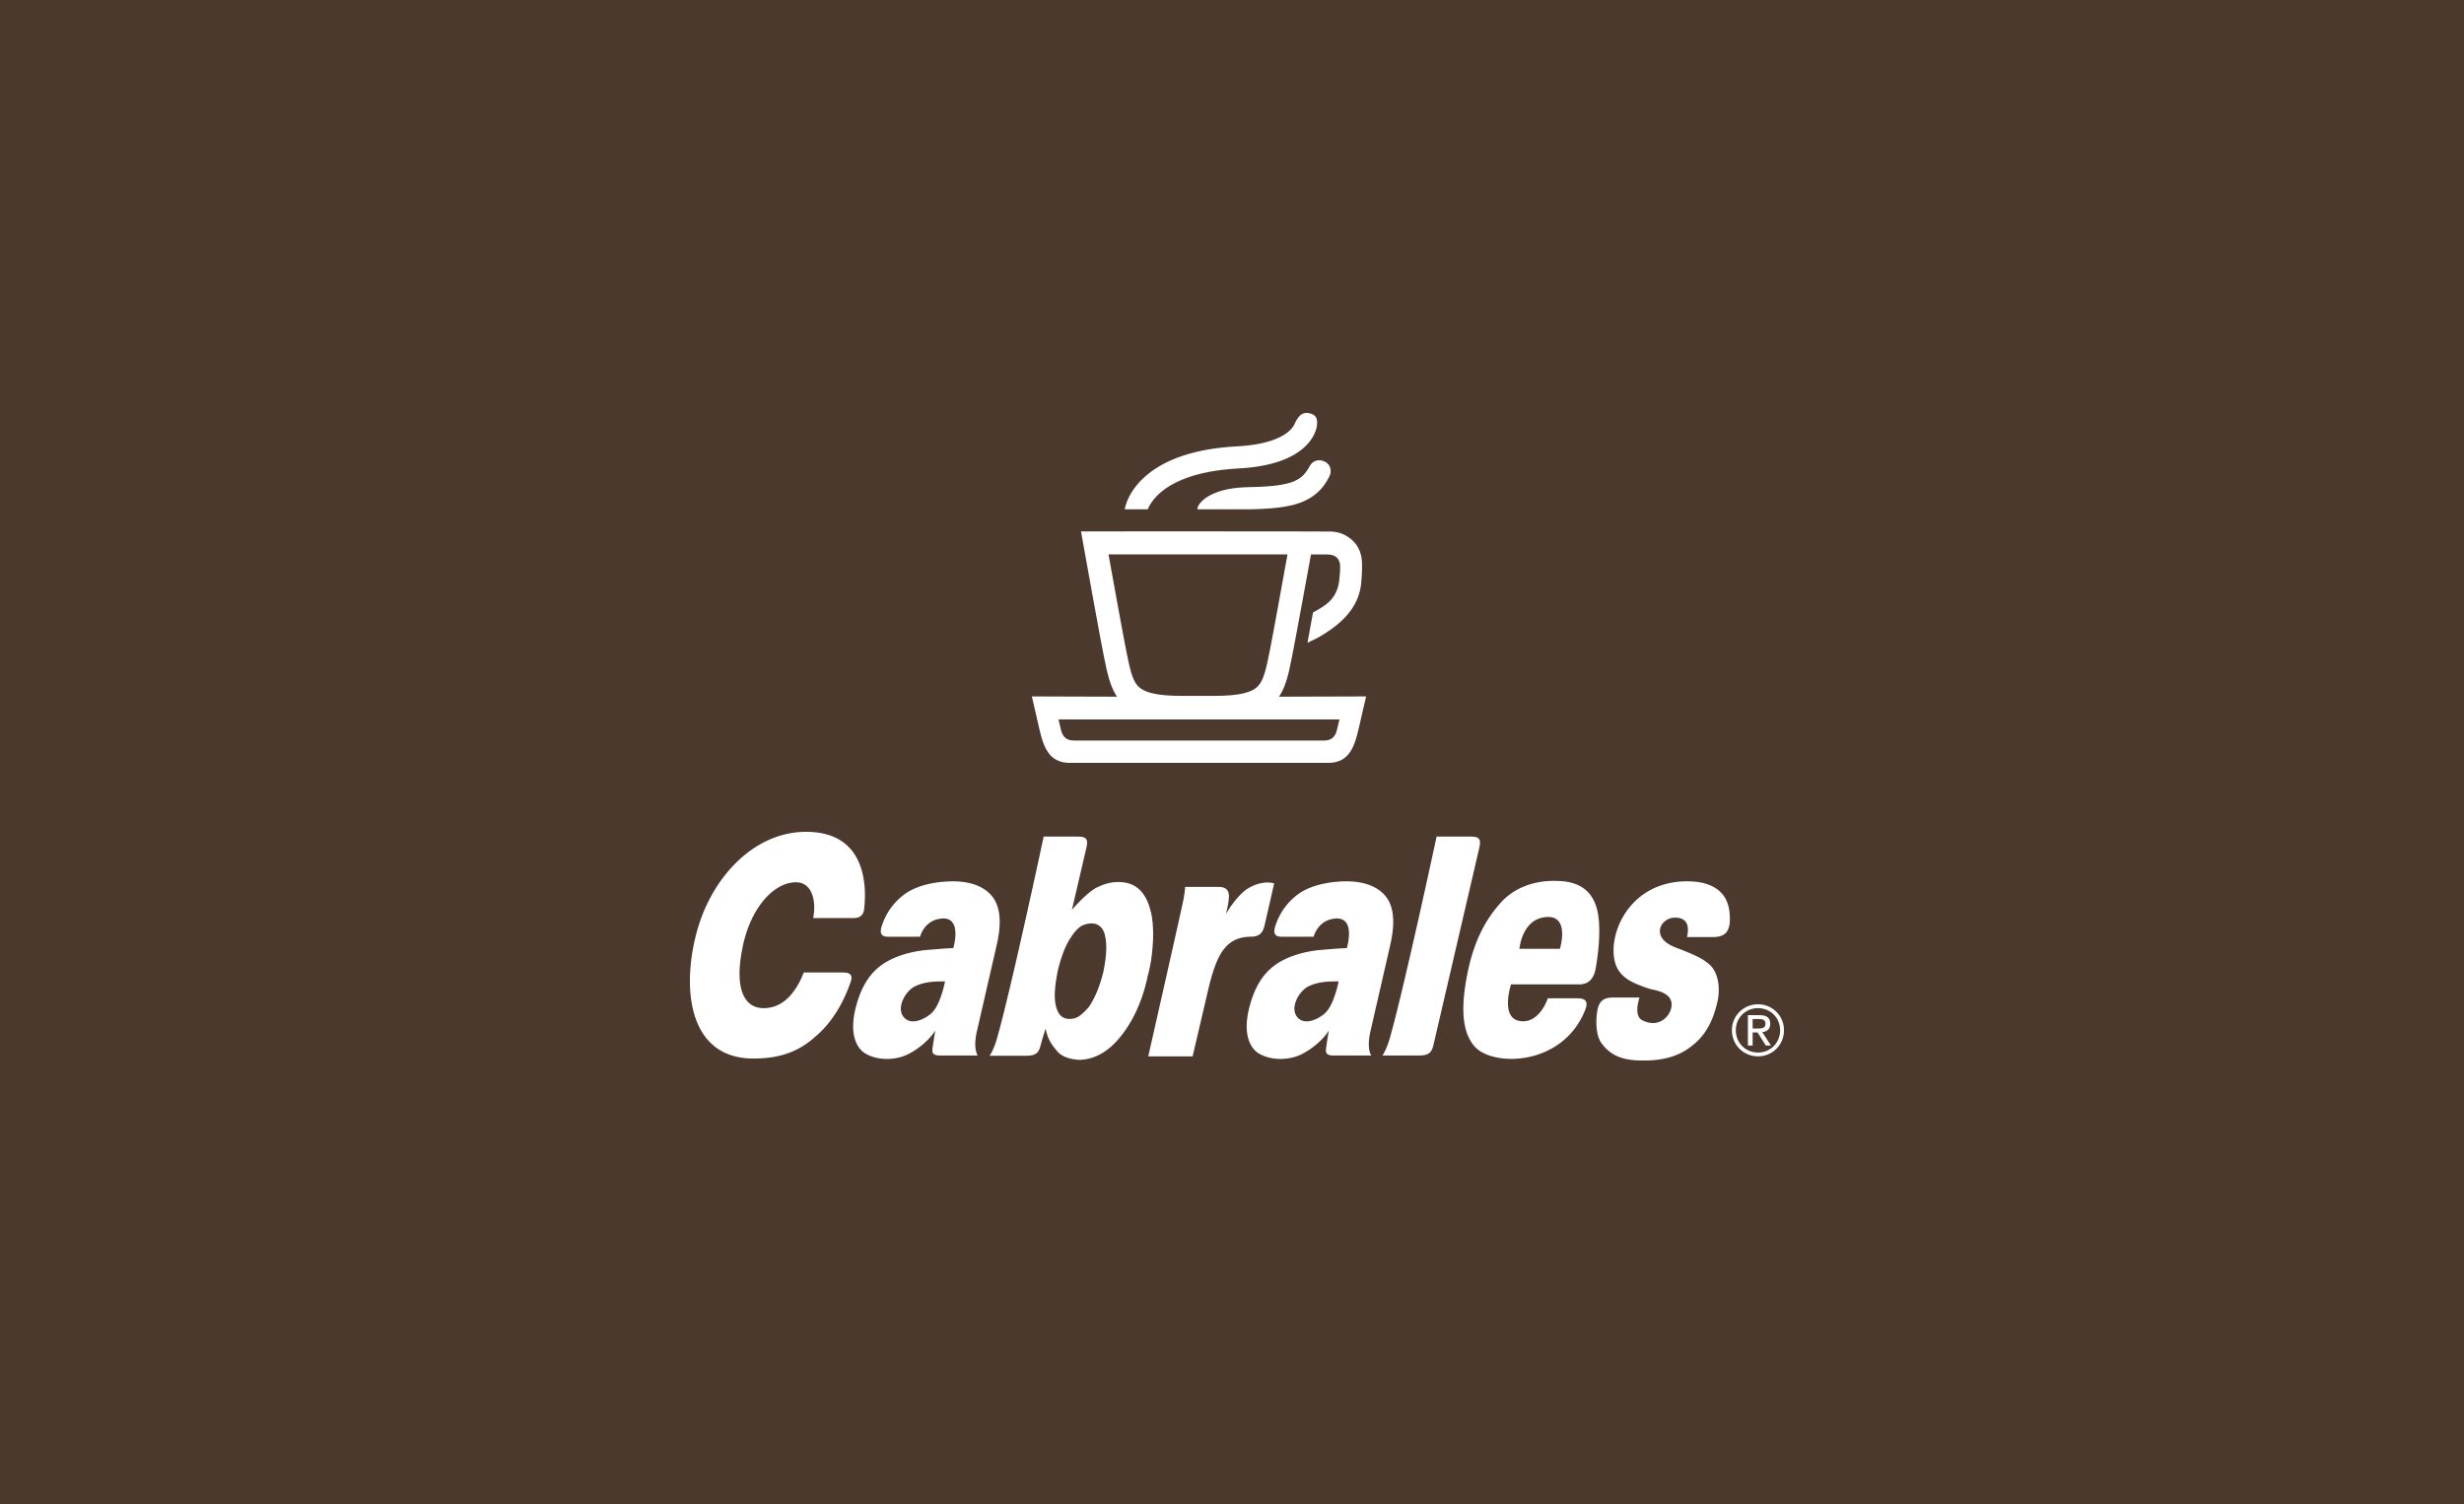 Cabrales Café Molido Descafeinado 250g – Le Pot Market